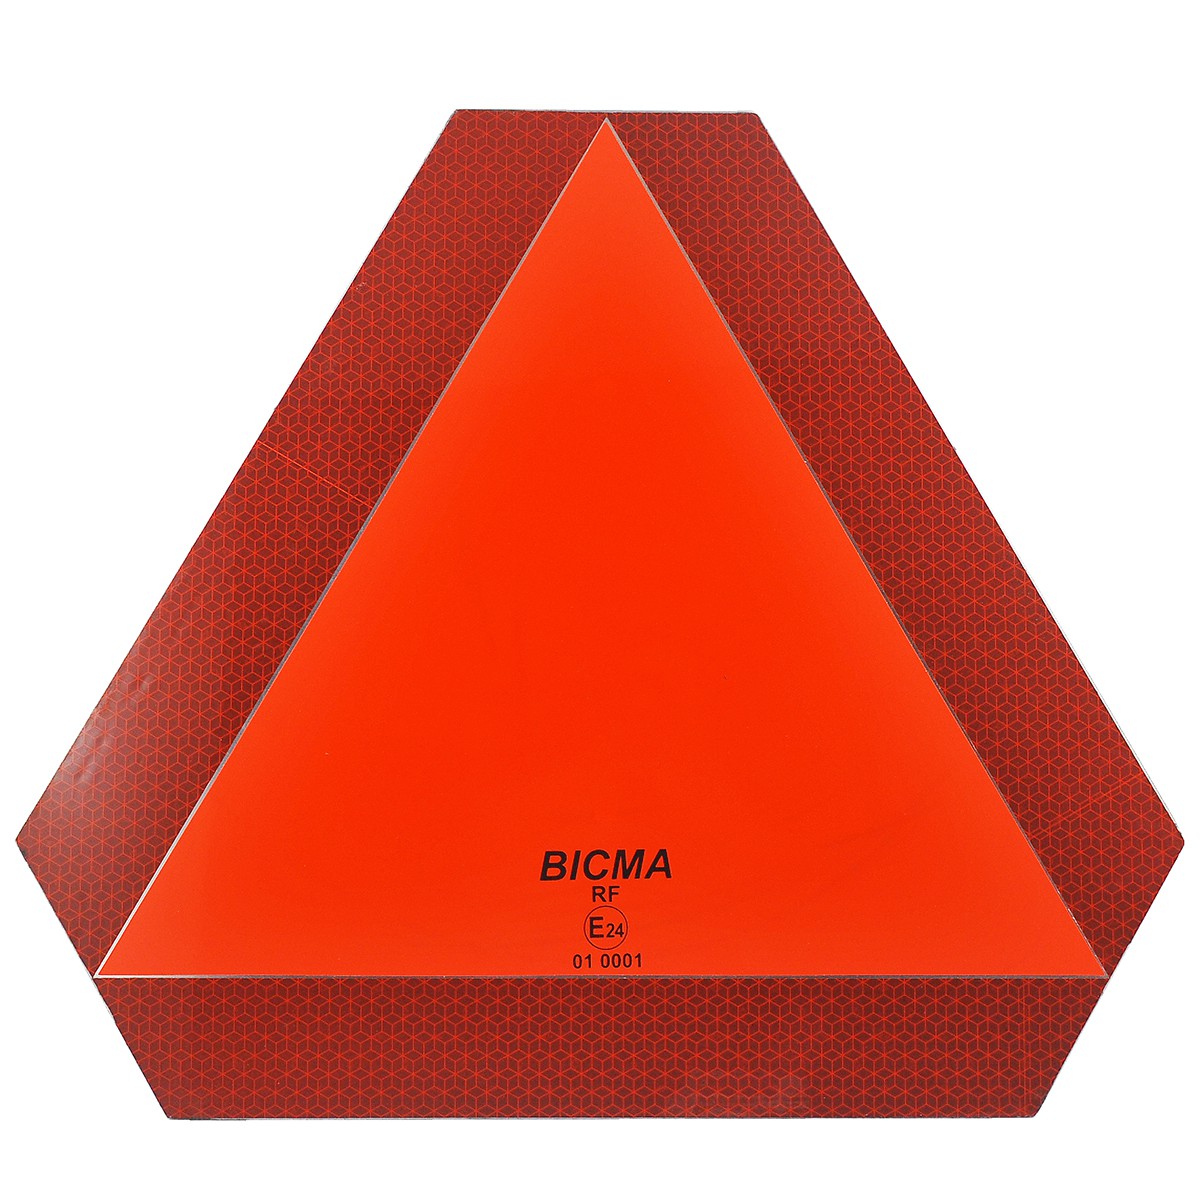 Triángulo reflectante para remolque / ECE 69 01 / E24 / 40-70070 / 01 0001 / BICMA